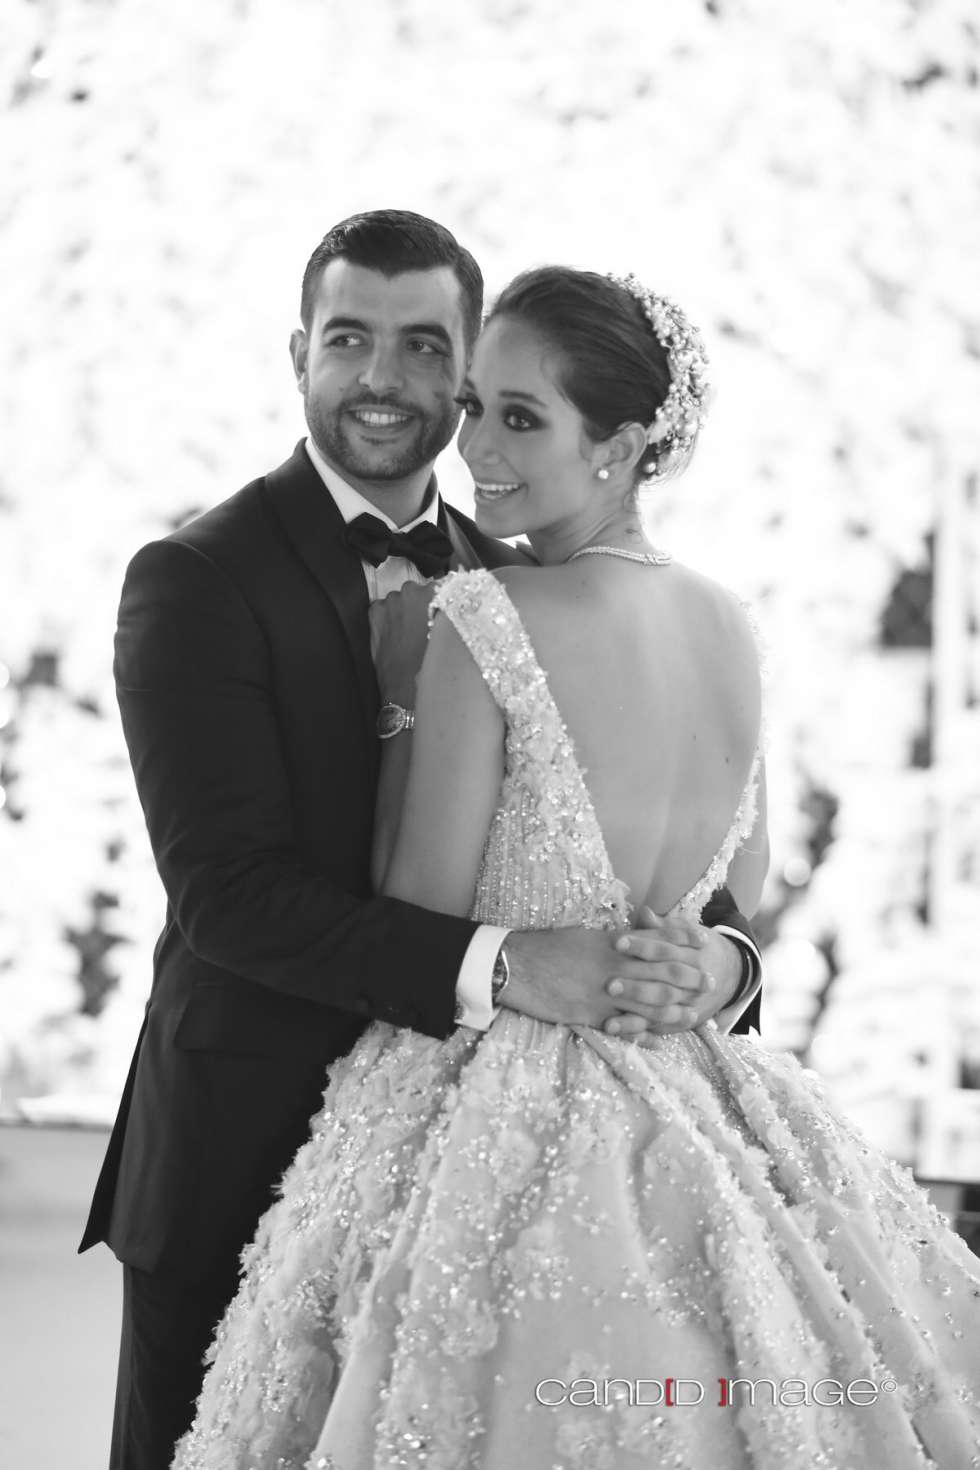 Lana El Sahely and Ali Awada's Wedding | Arabia Weddings